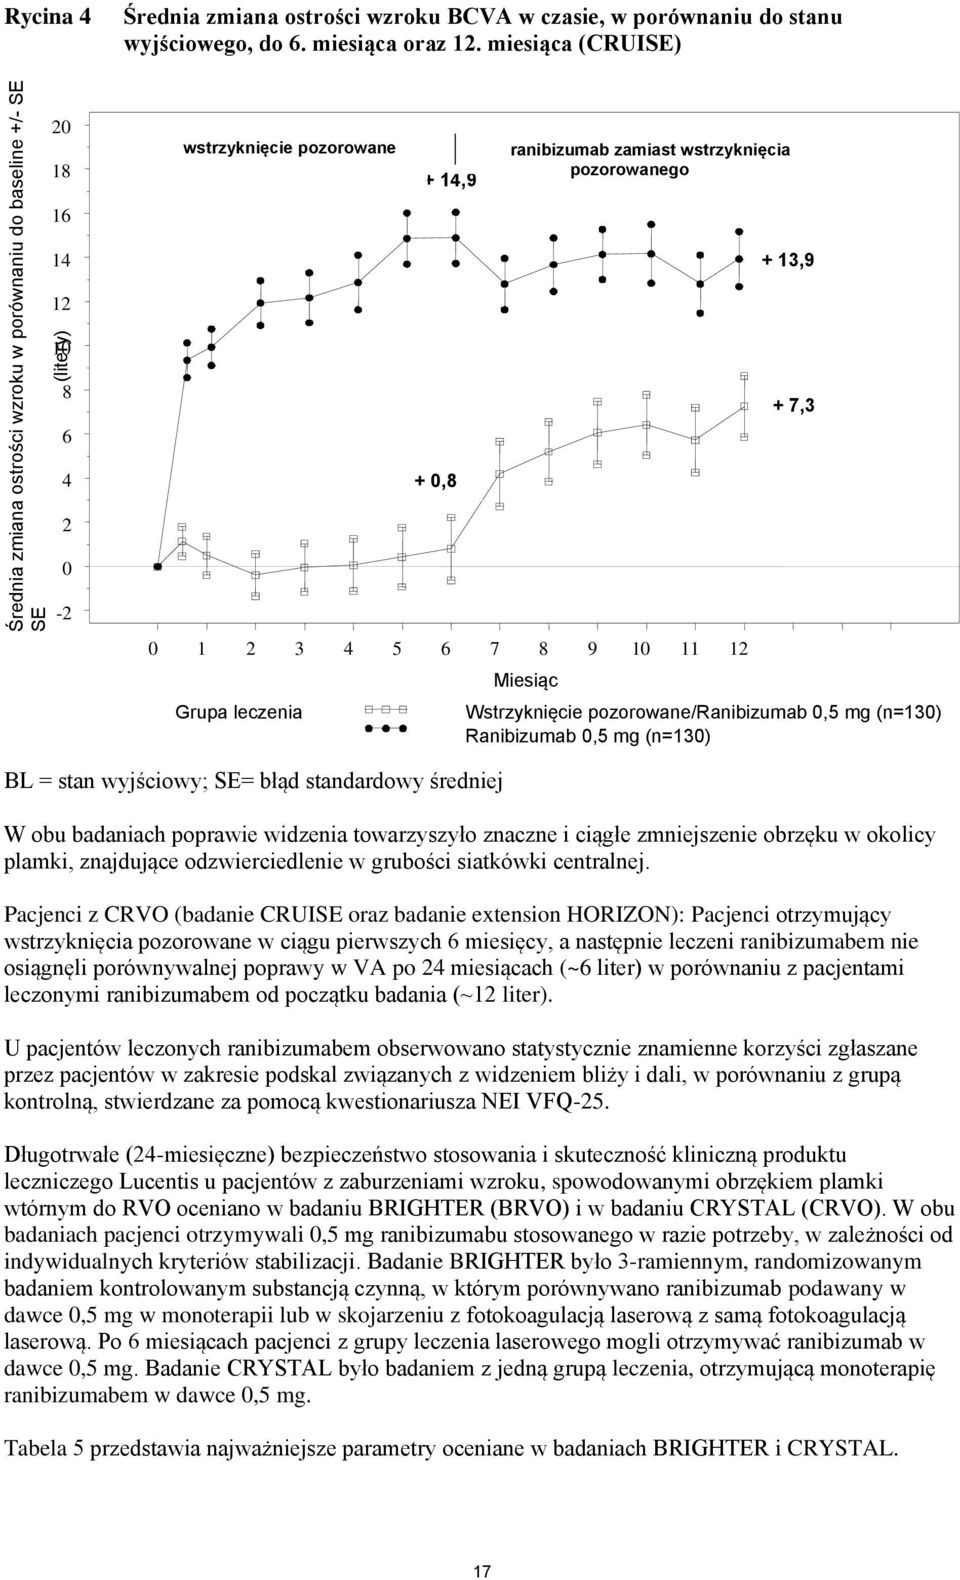 wyjściowy; SE= błąd standardowy średniej Miesiąc Wstrzyknięcie pozorowane/ranibizumab 0,5 mg (n=130) Ranibizumab 0,5 mg (n=130) W obu badaniach poprawie widzenia towarzyszyło znaczne i ciągłe